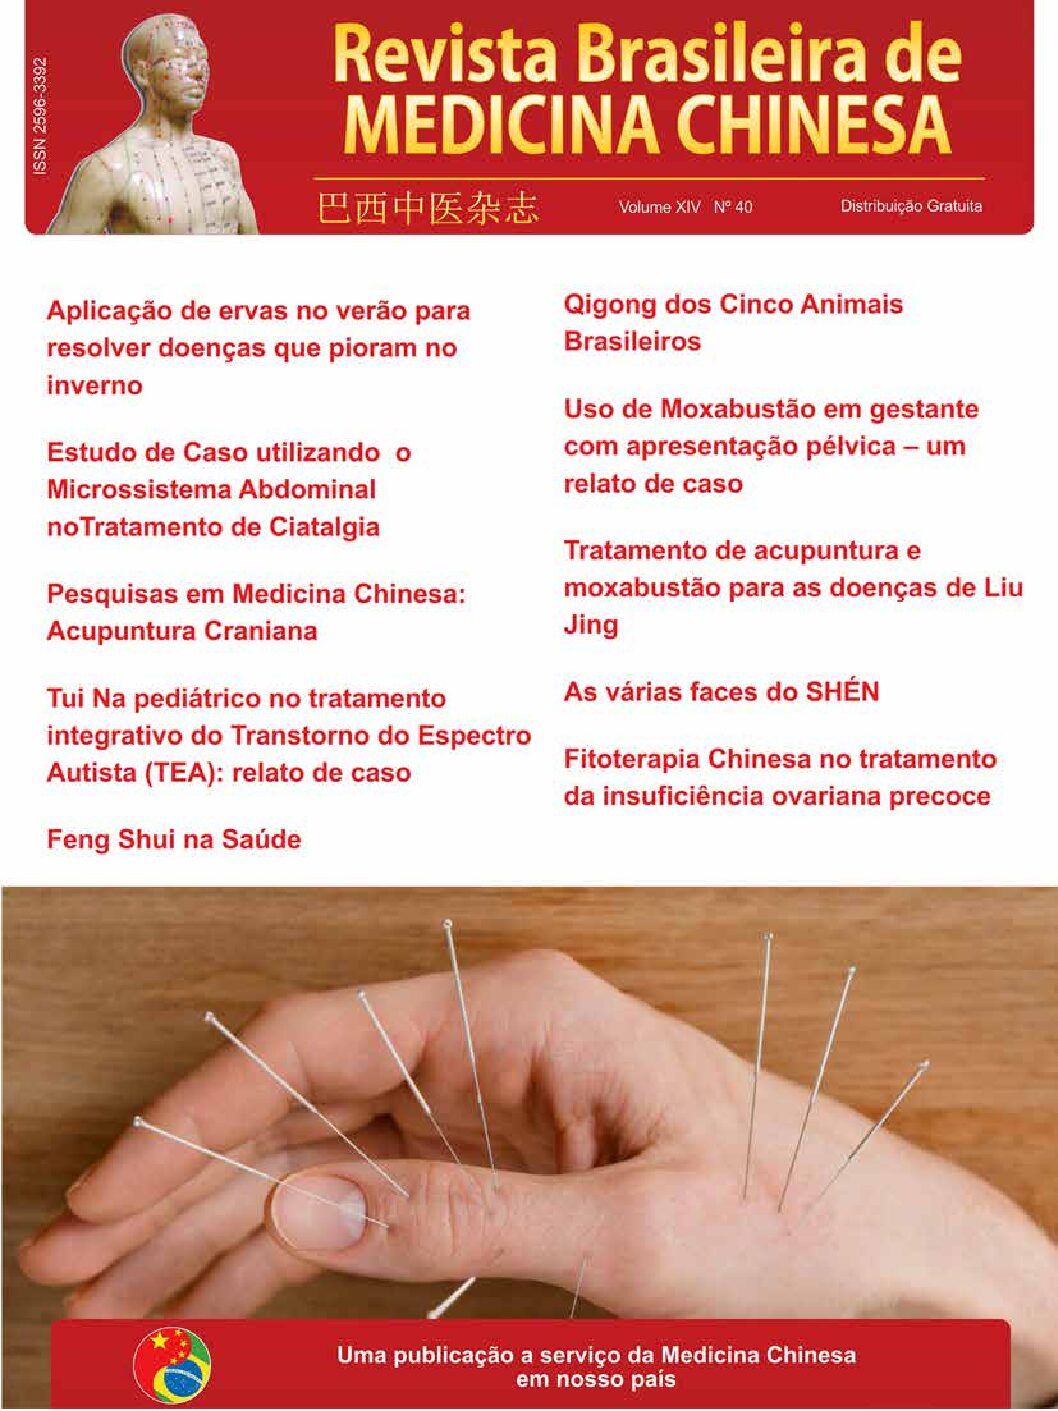 Revista Brasileira de Medicina Chinesa – 40ª Edição